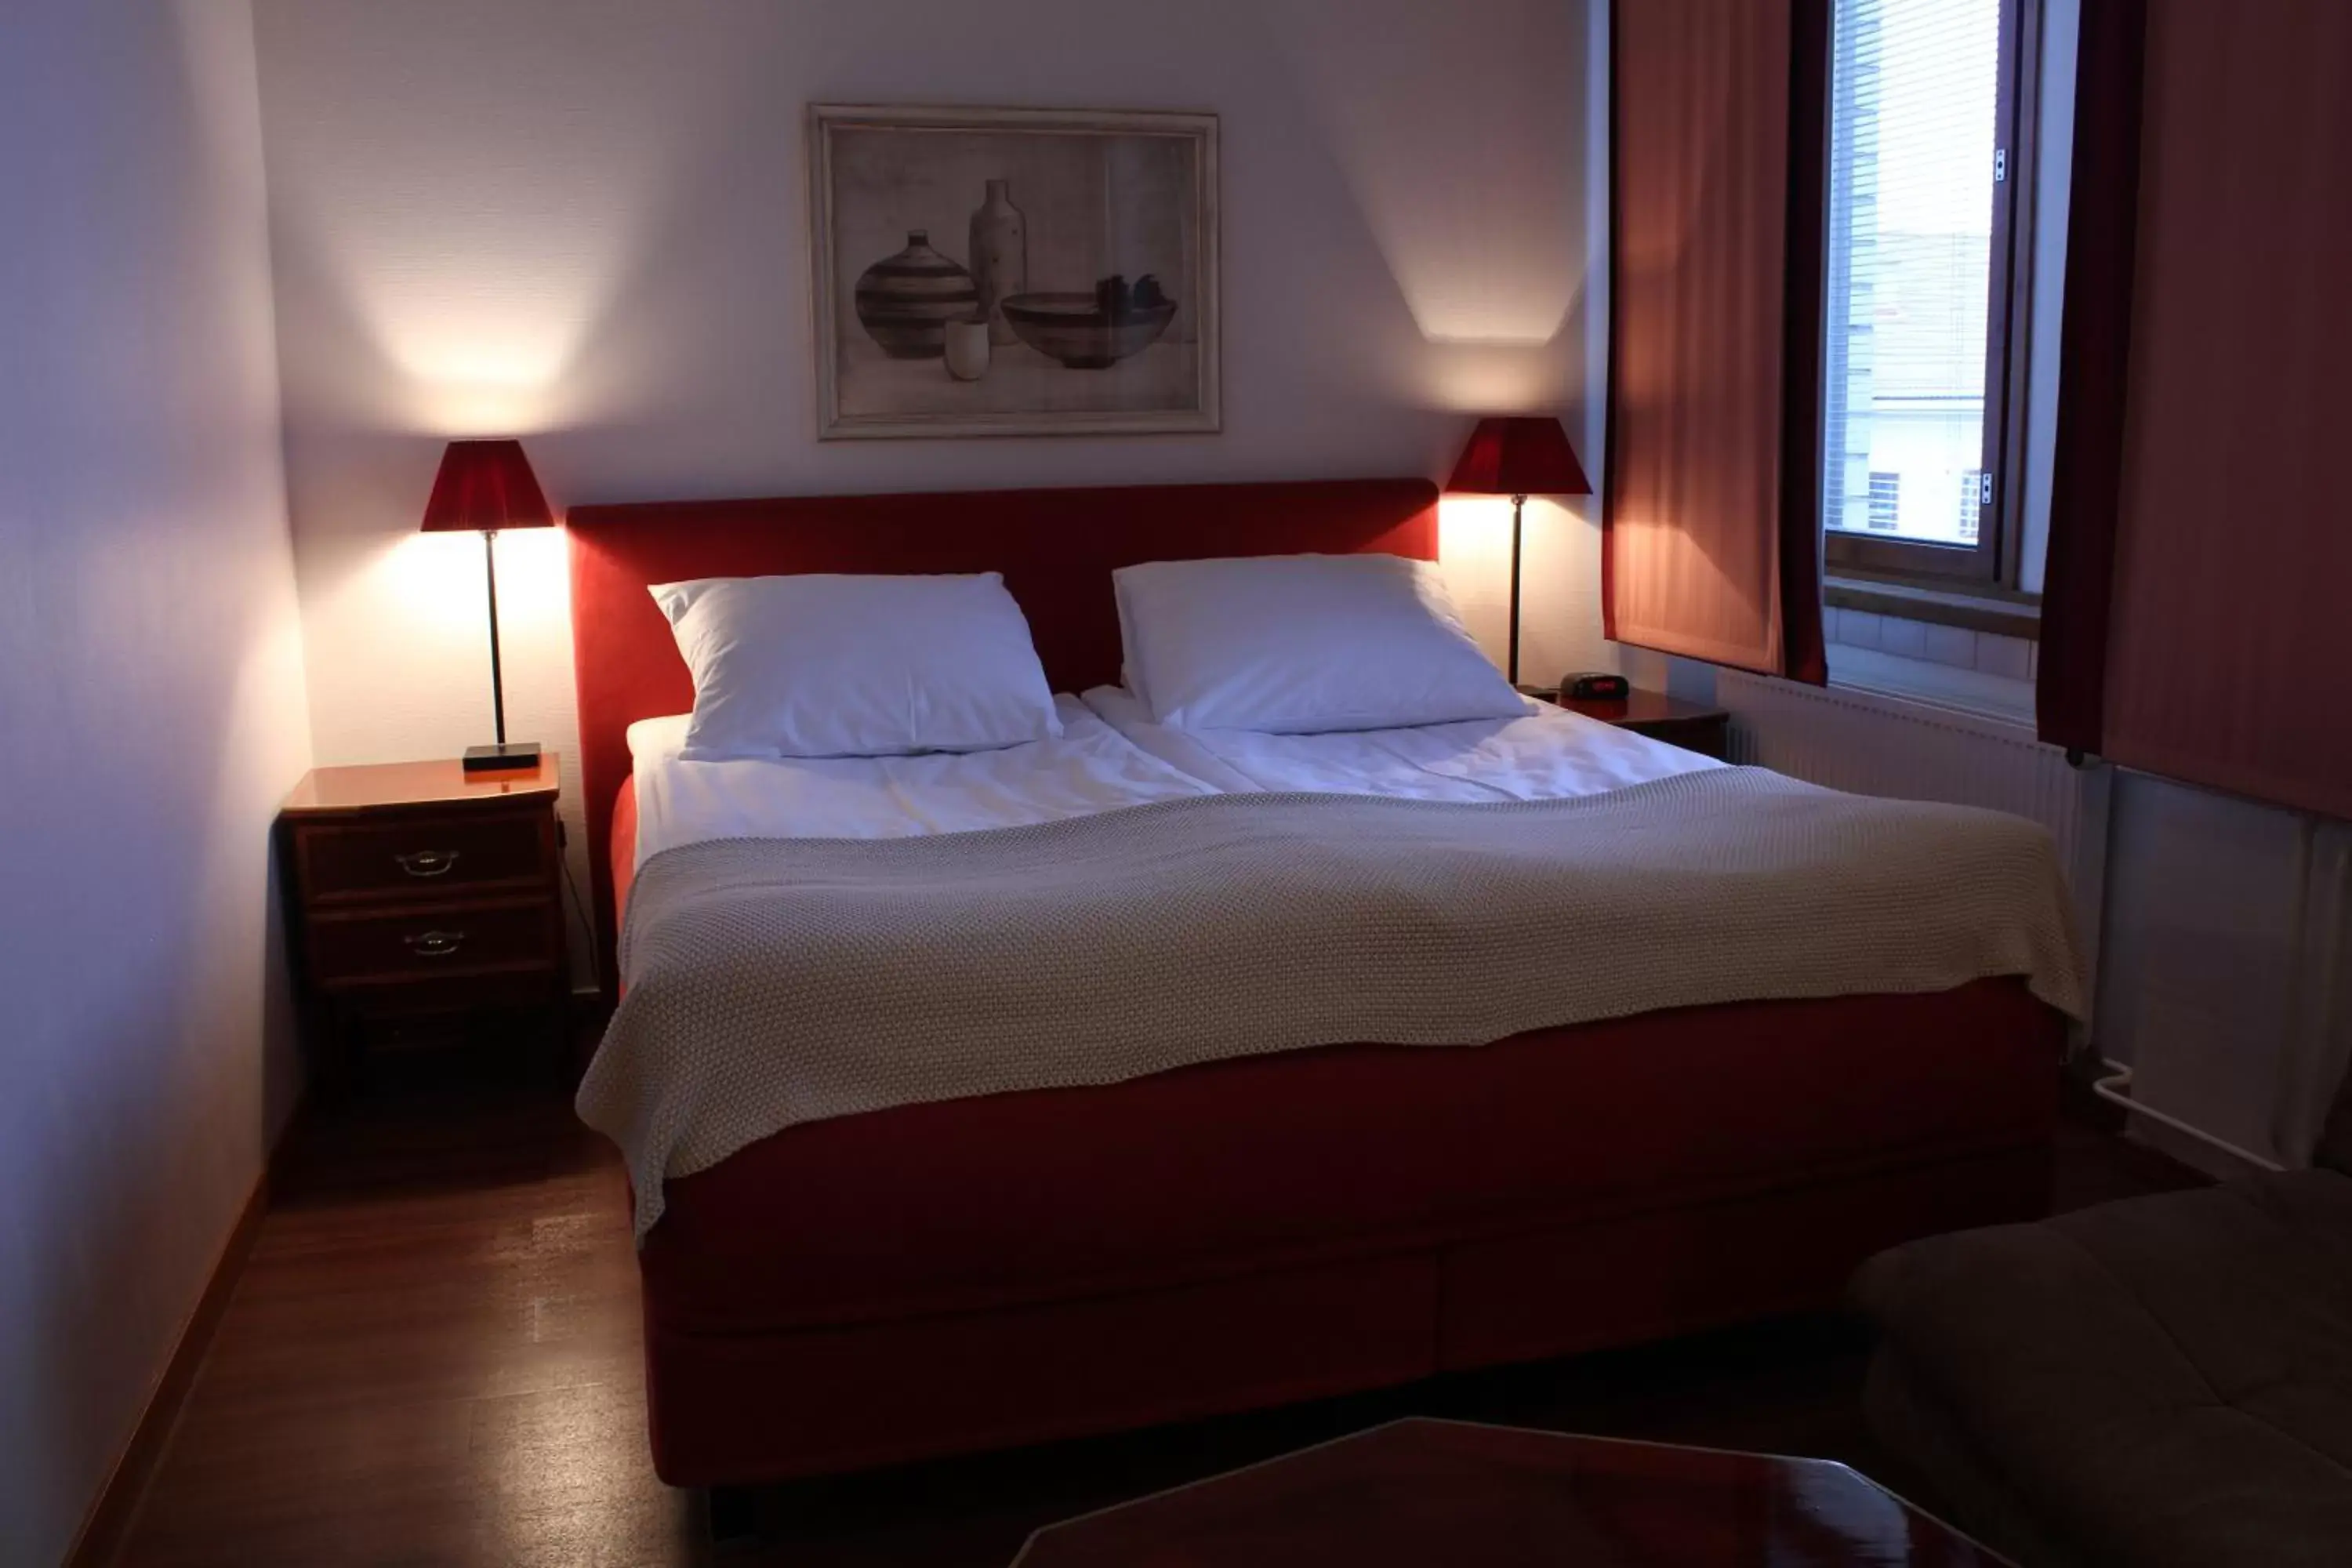 Bedroom, Bed in Best Western Hotel Apollo